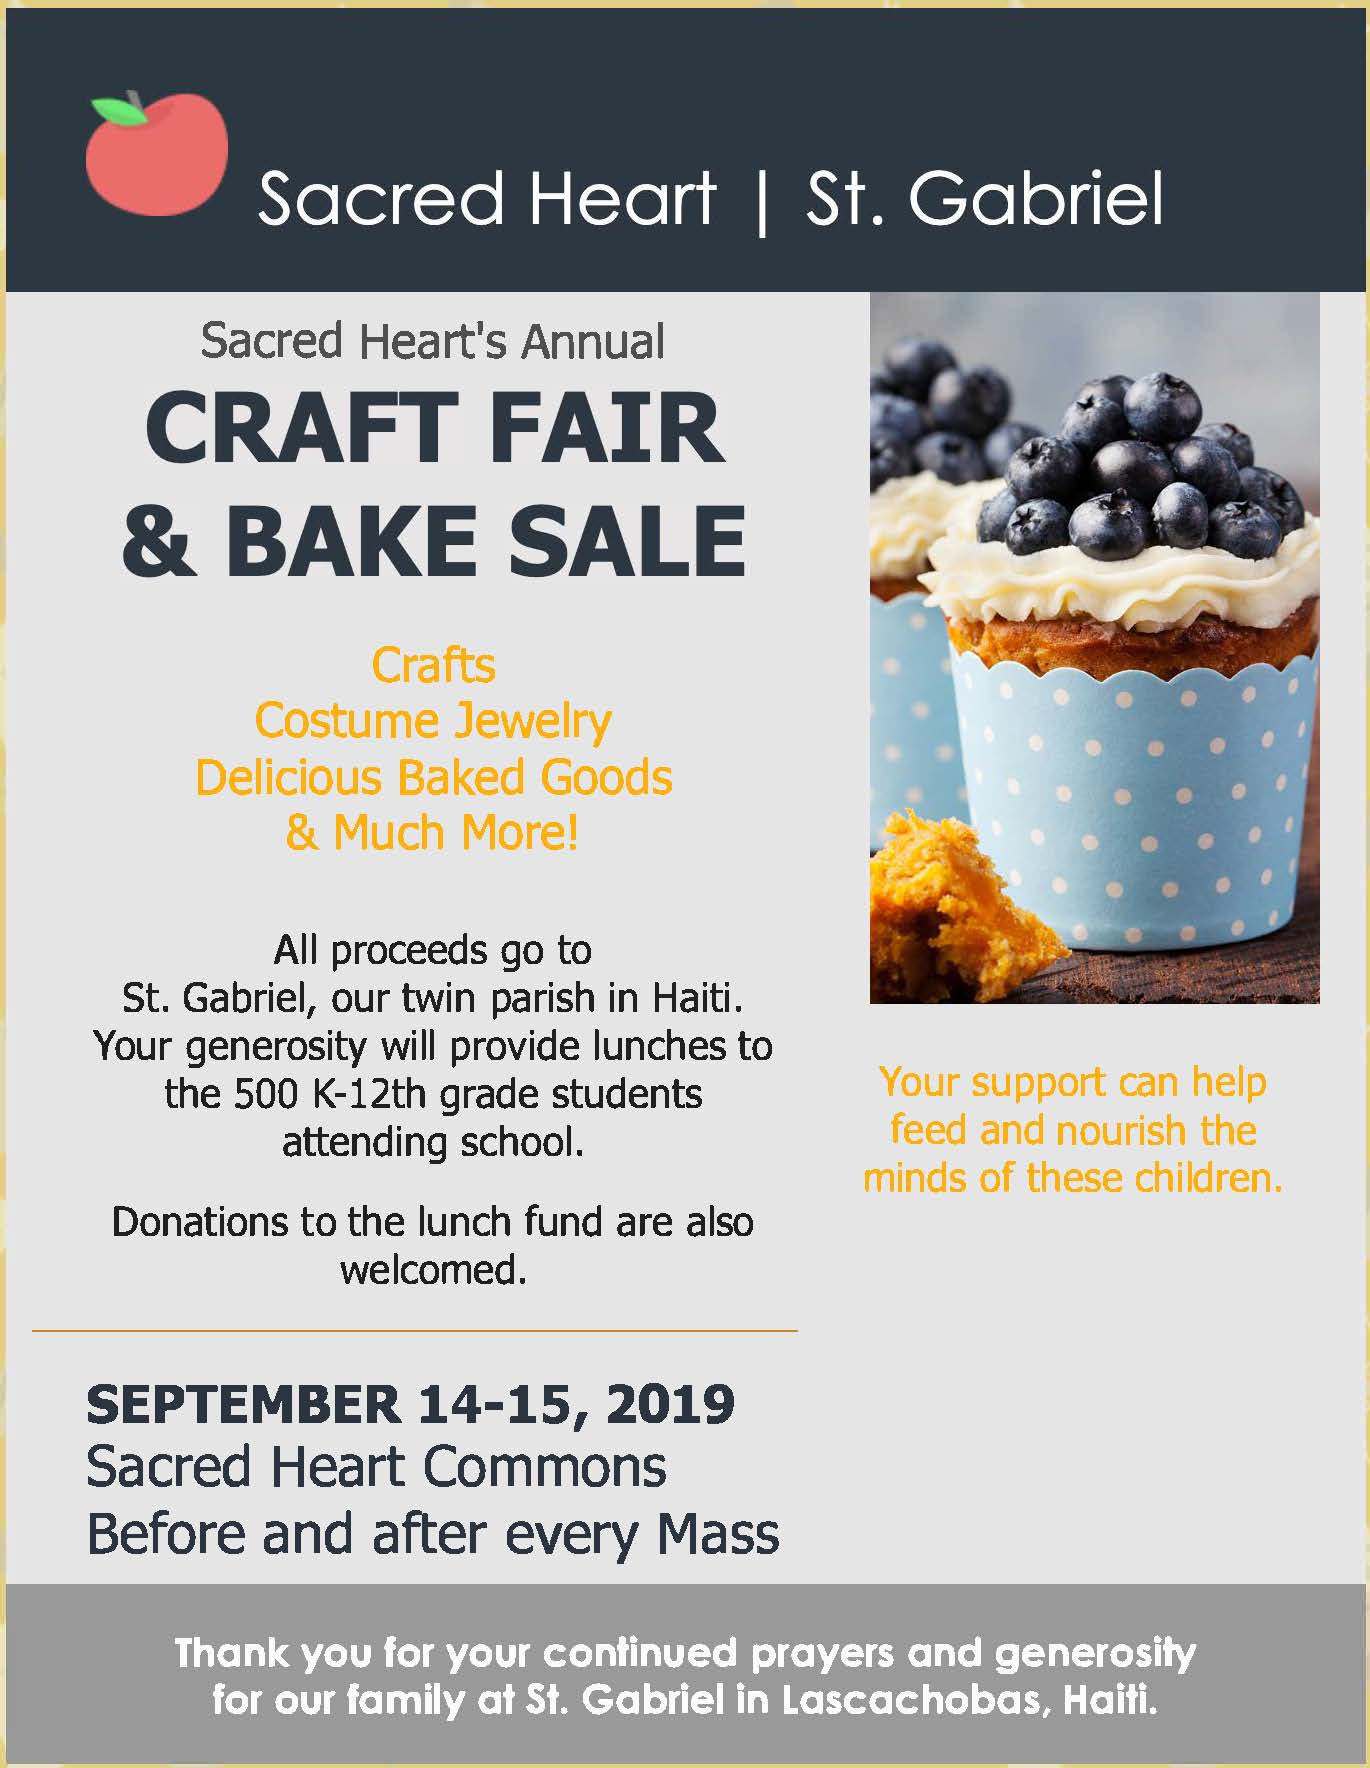 Sacred Heart's Craft Fair and Bake Sale